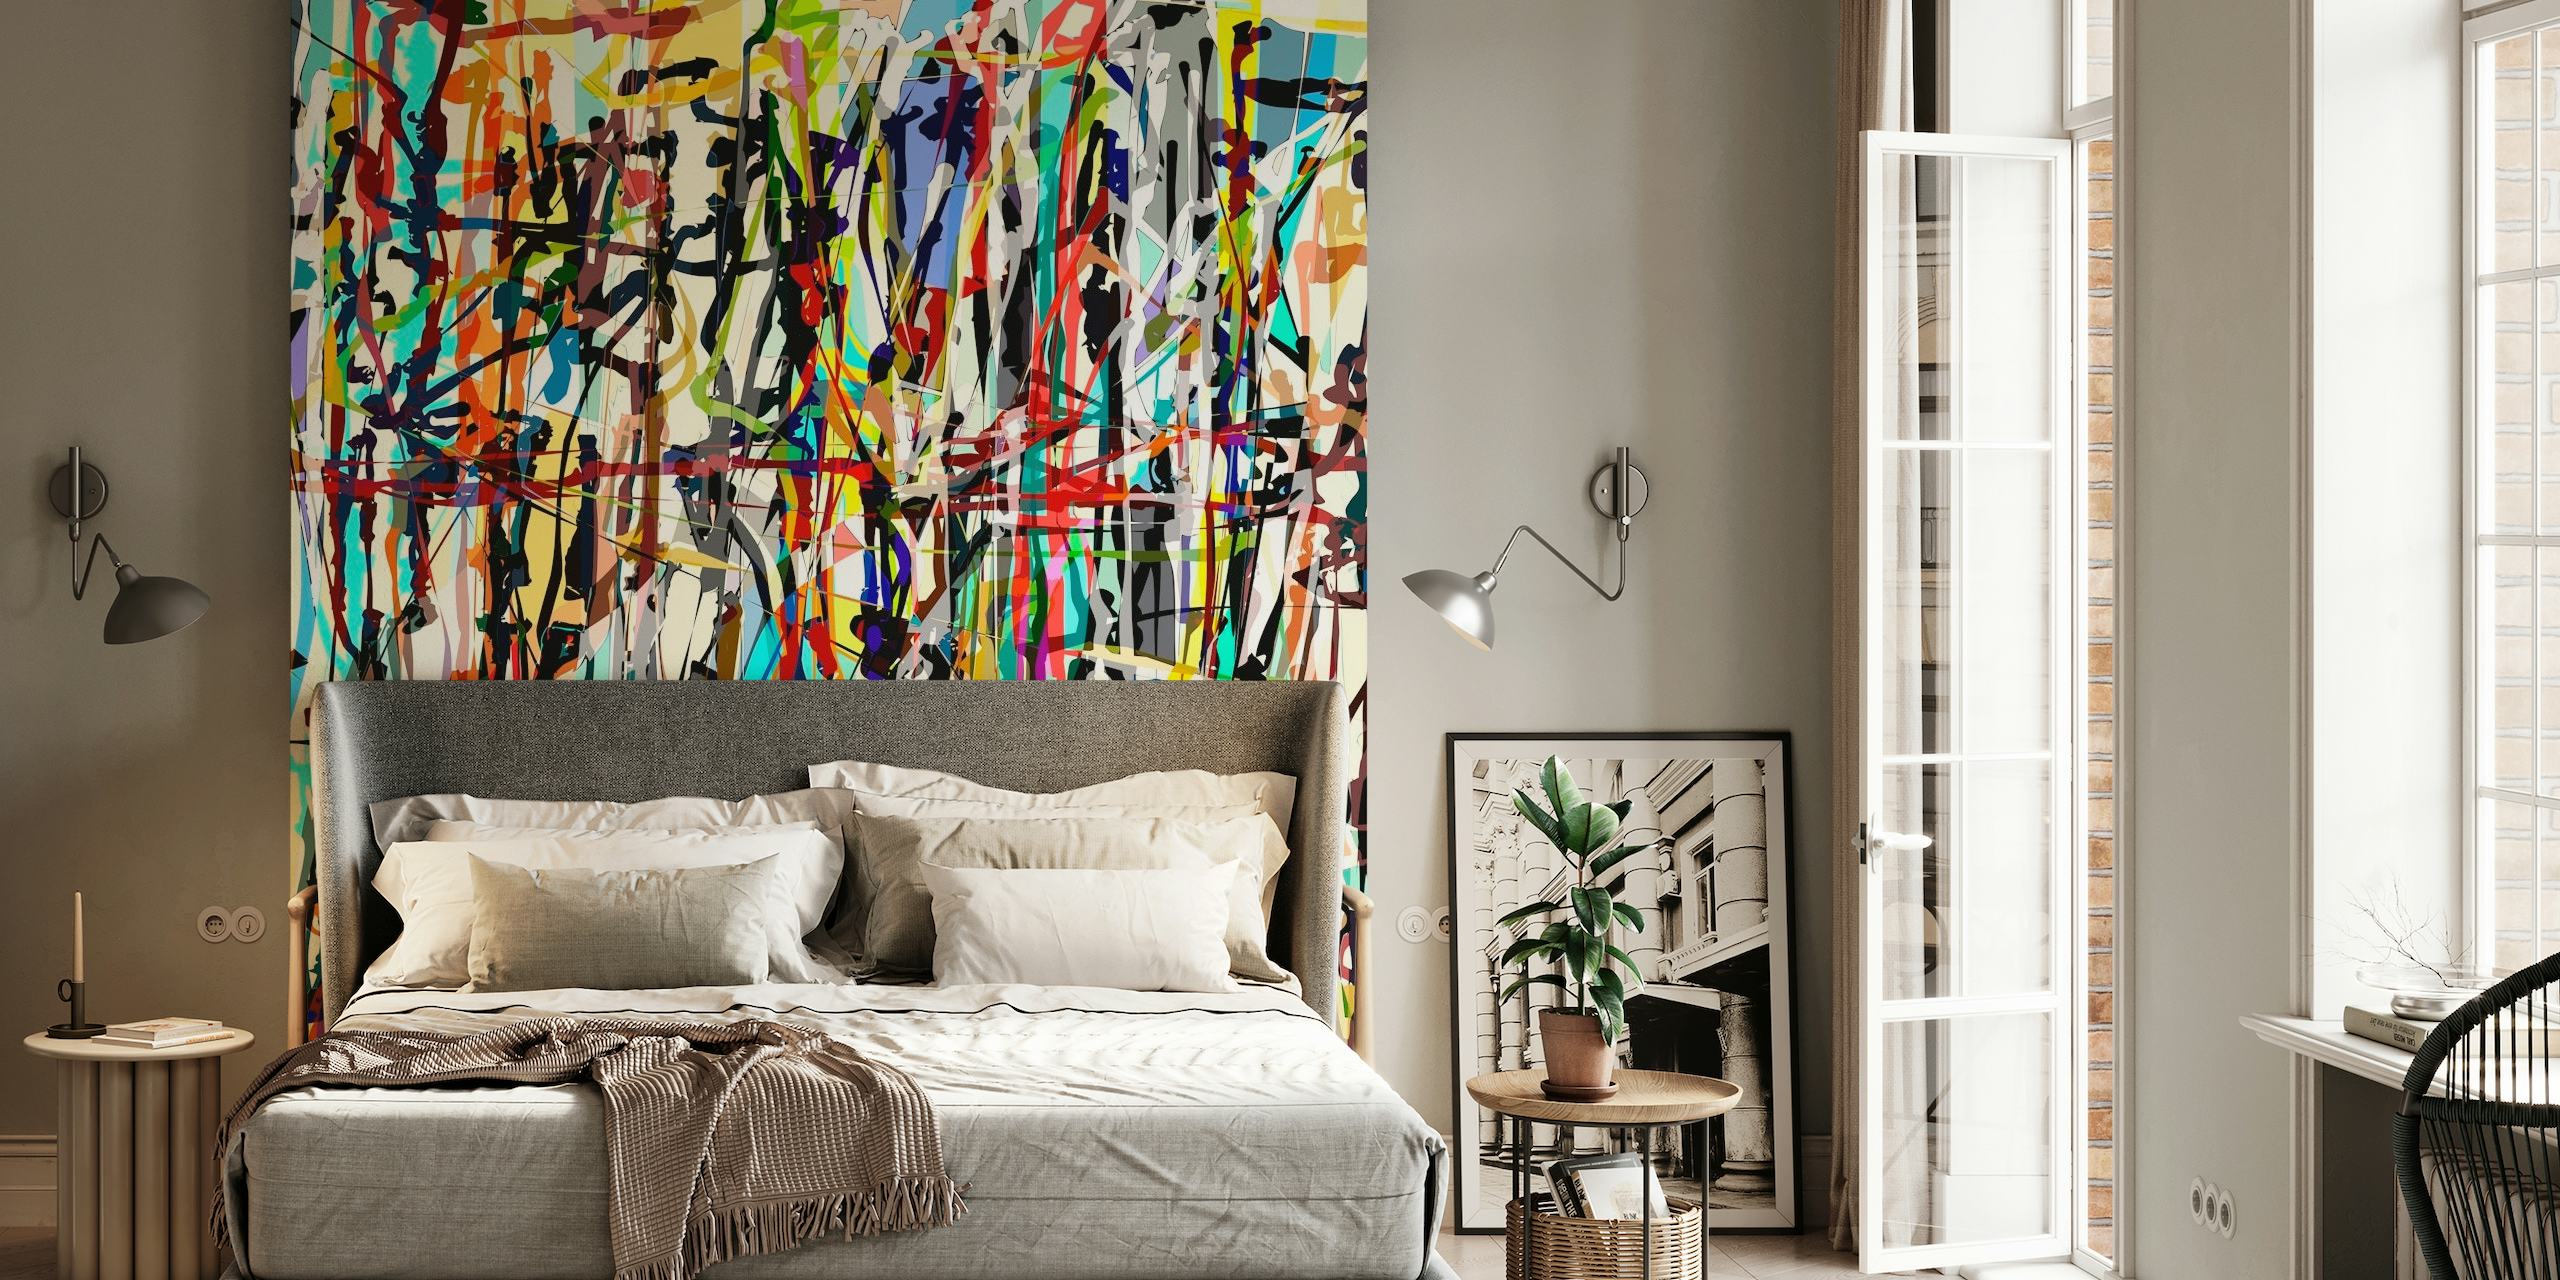 Mural de parede abstrato inspirado em Pollock com uma mistura colorida de respingos vibrantes e pinceladas.